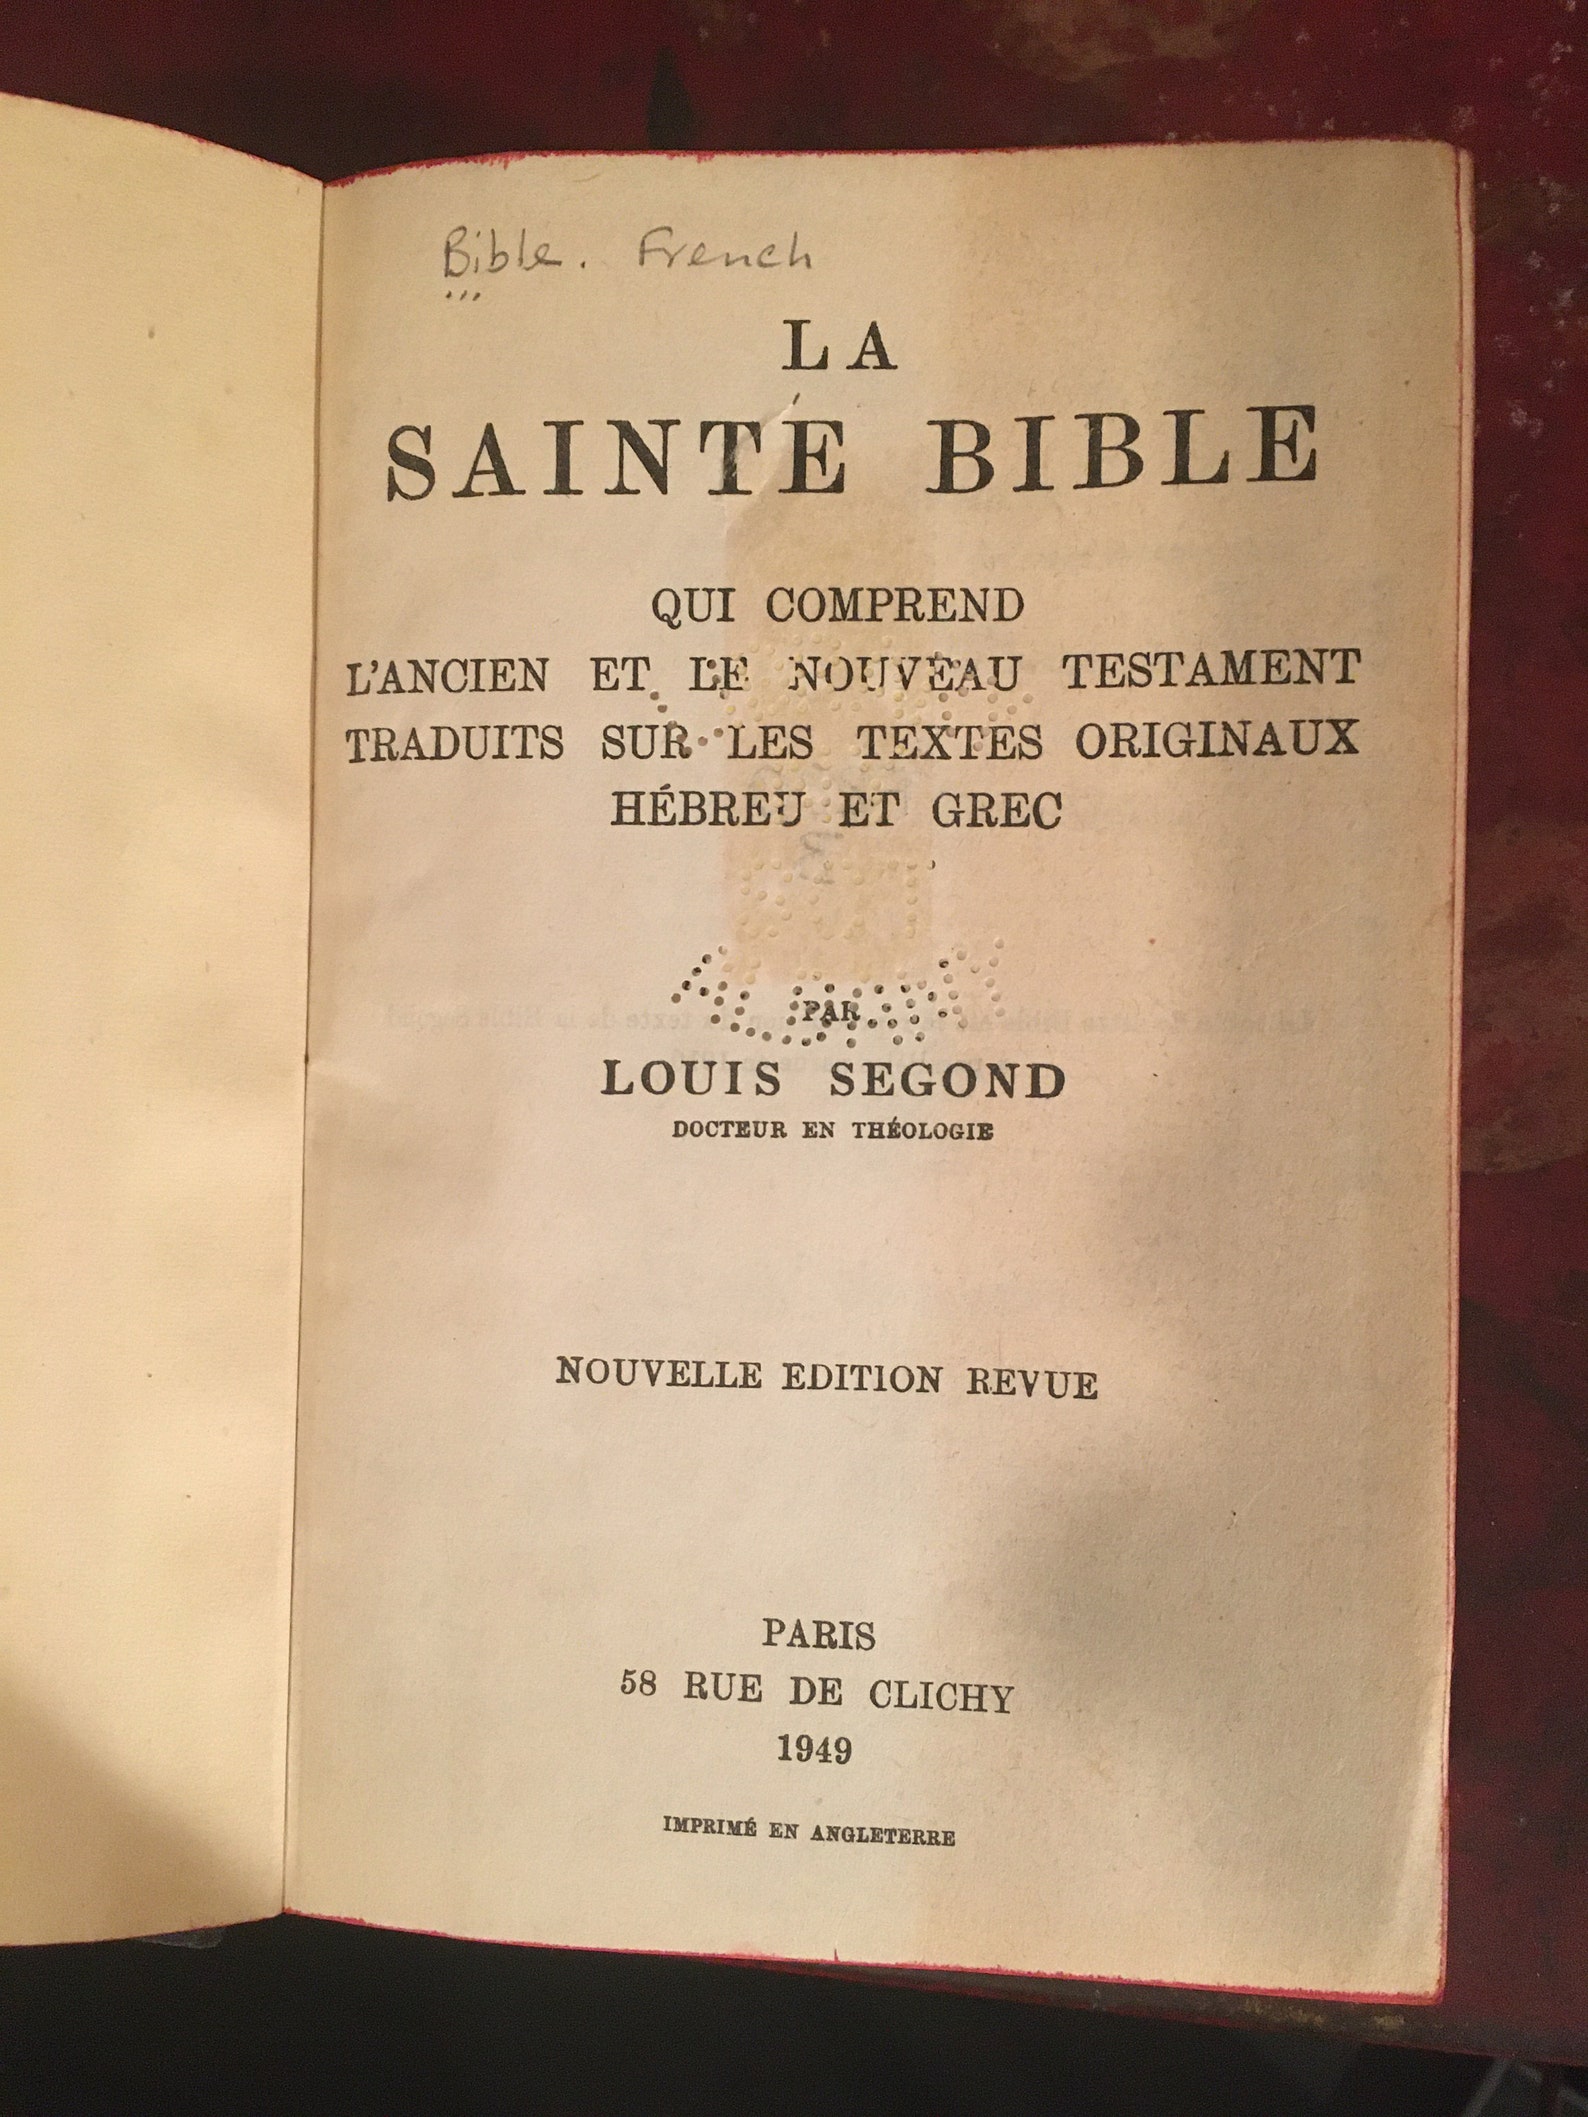 1949 La Sainte Bible Louis Segond | Etsy